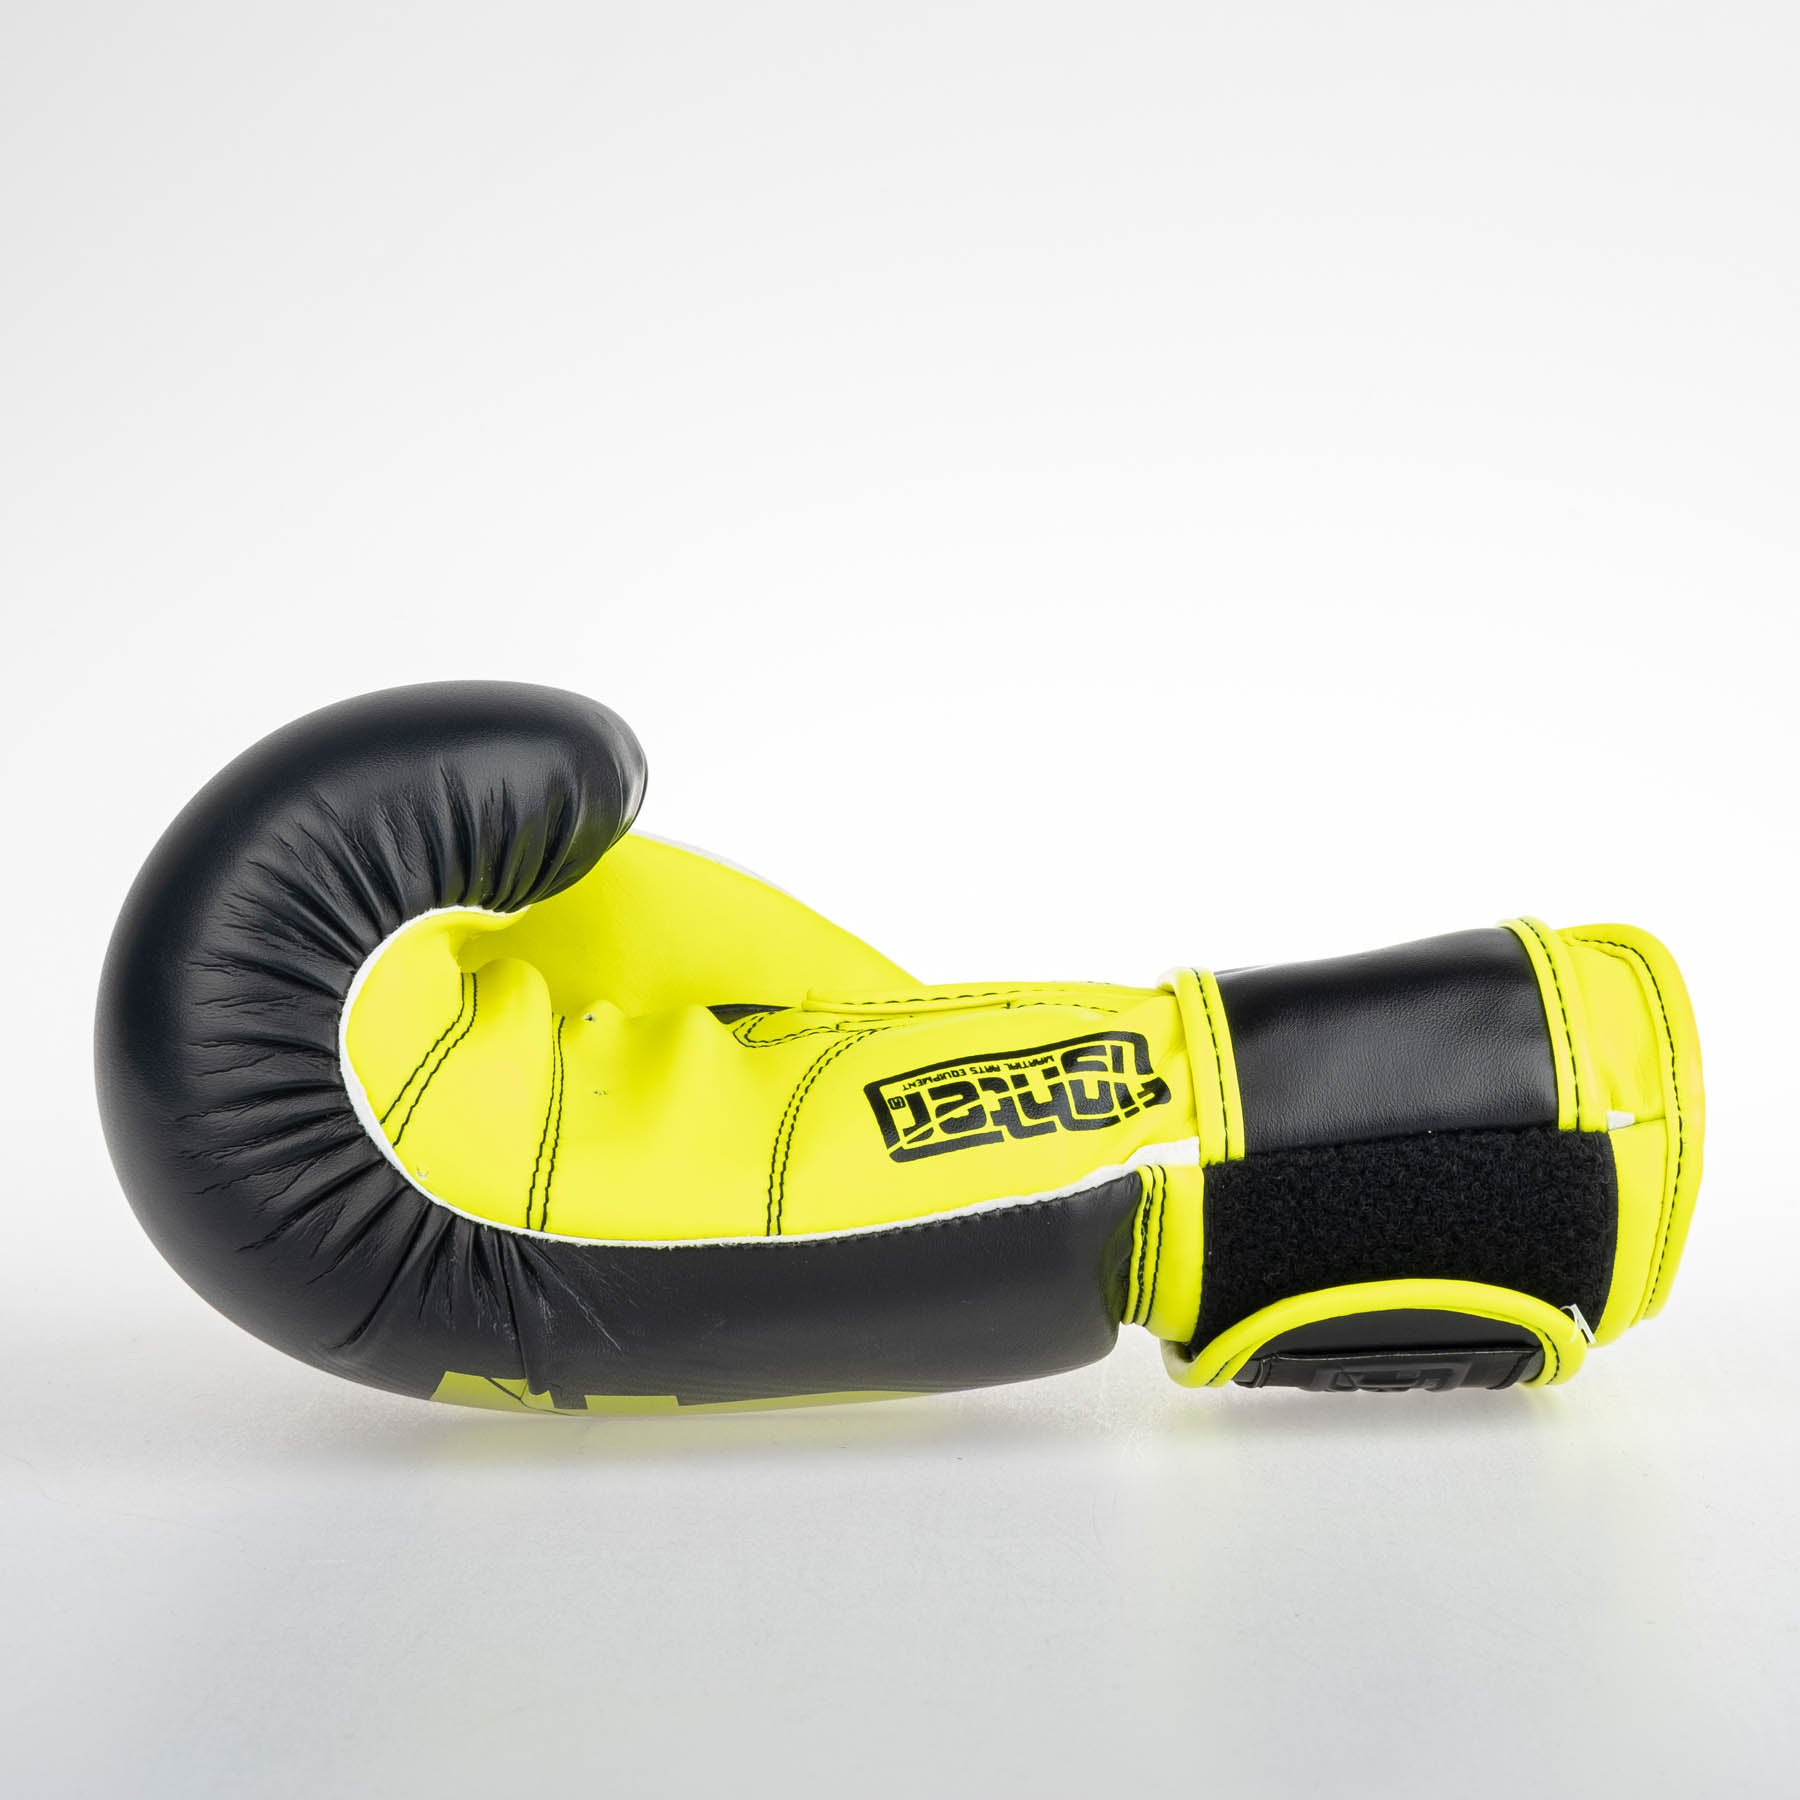 Fighter Boxhandschuhe SPEED - schwarz/gelb